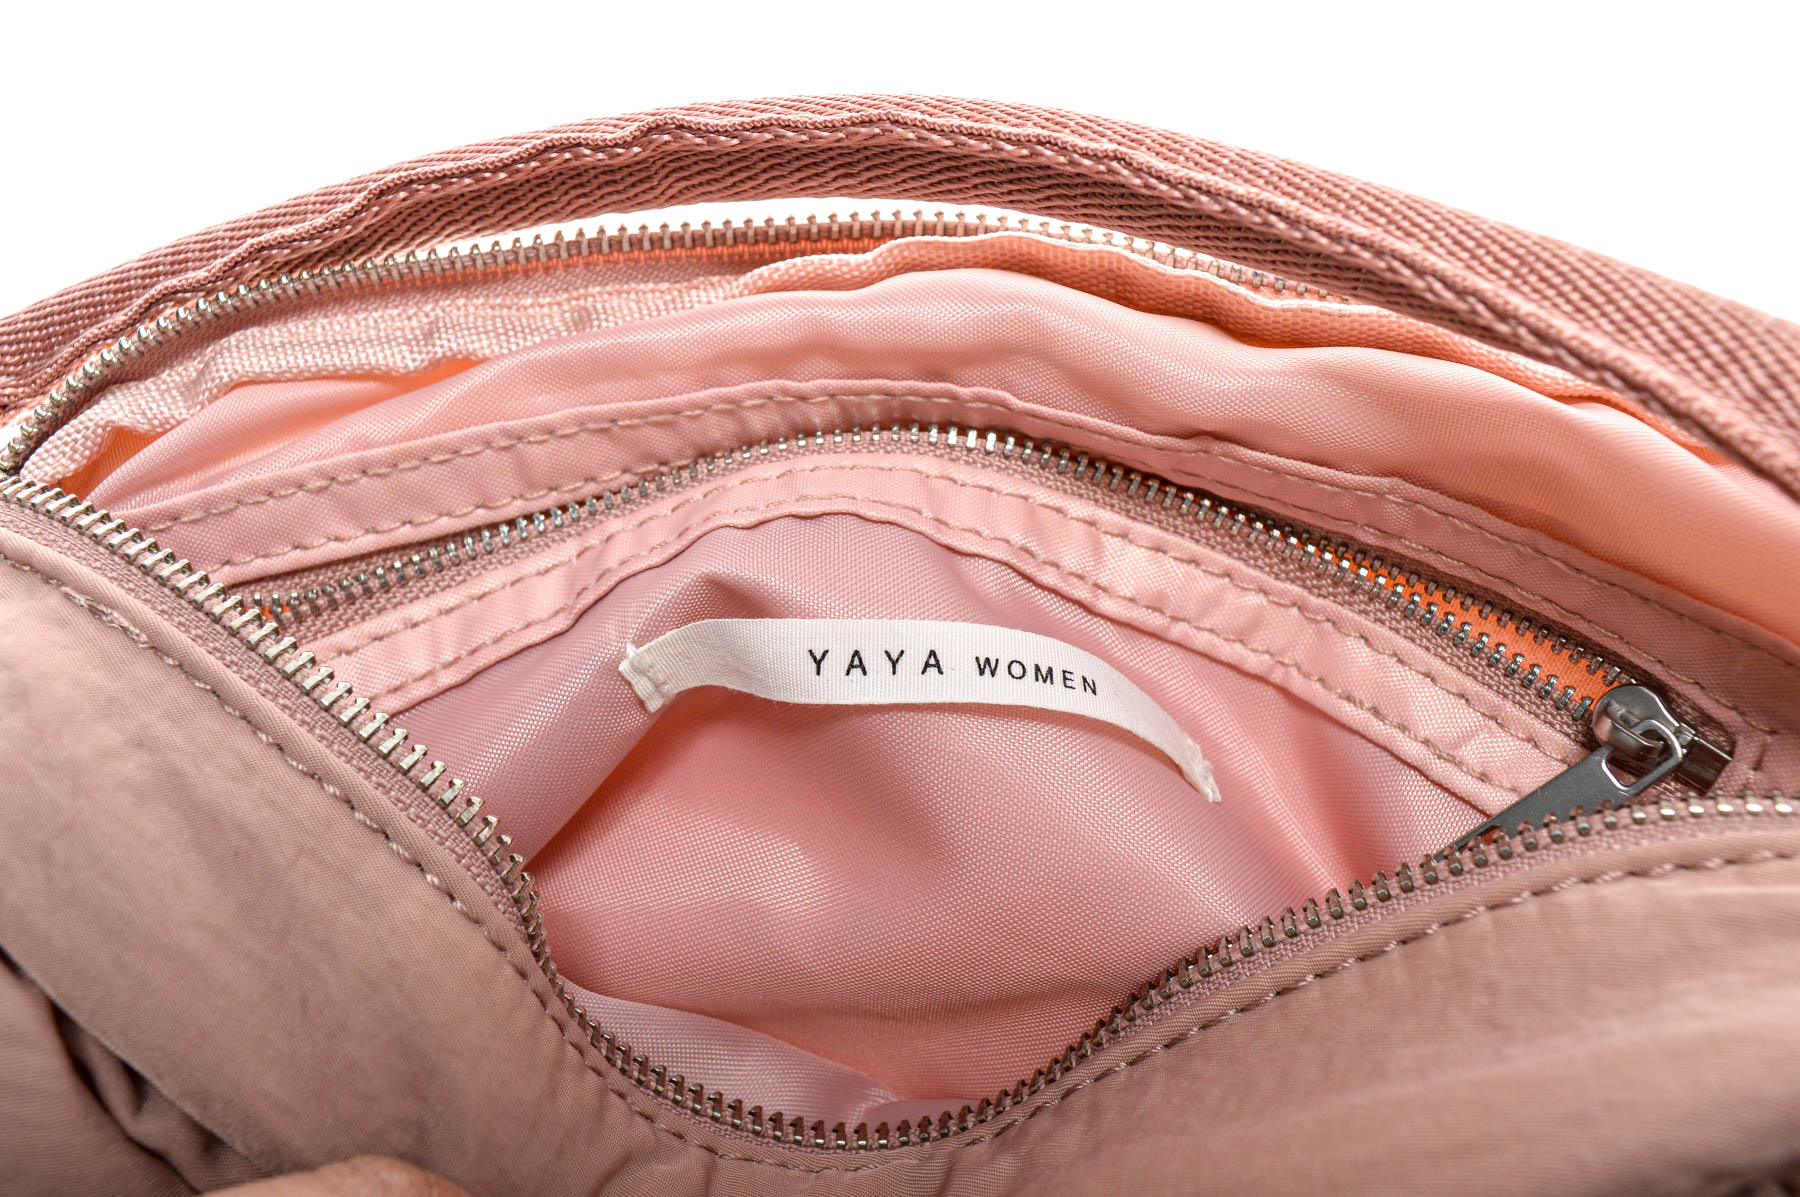 Women's bag - YAYA WOMEN - 2